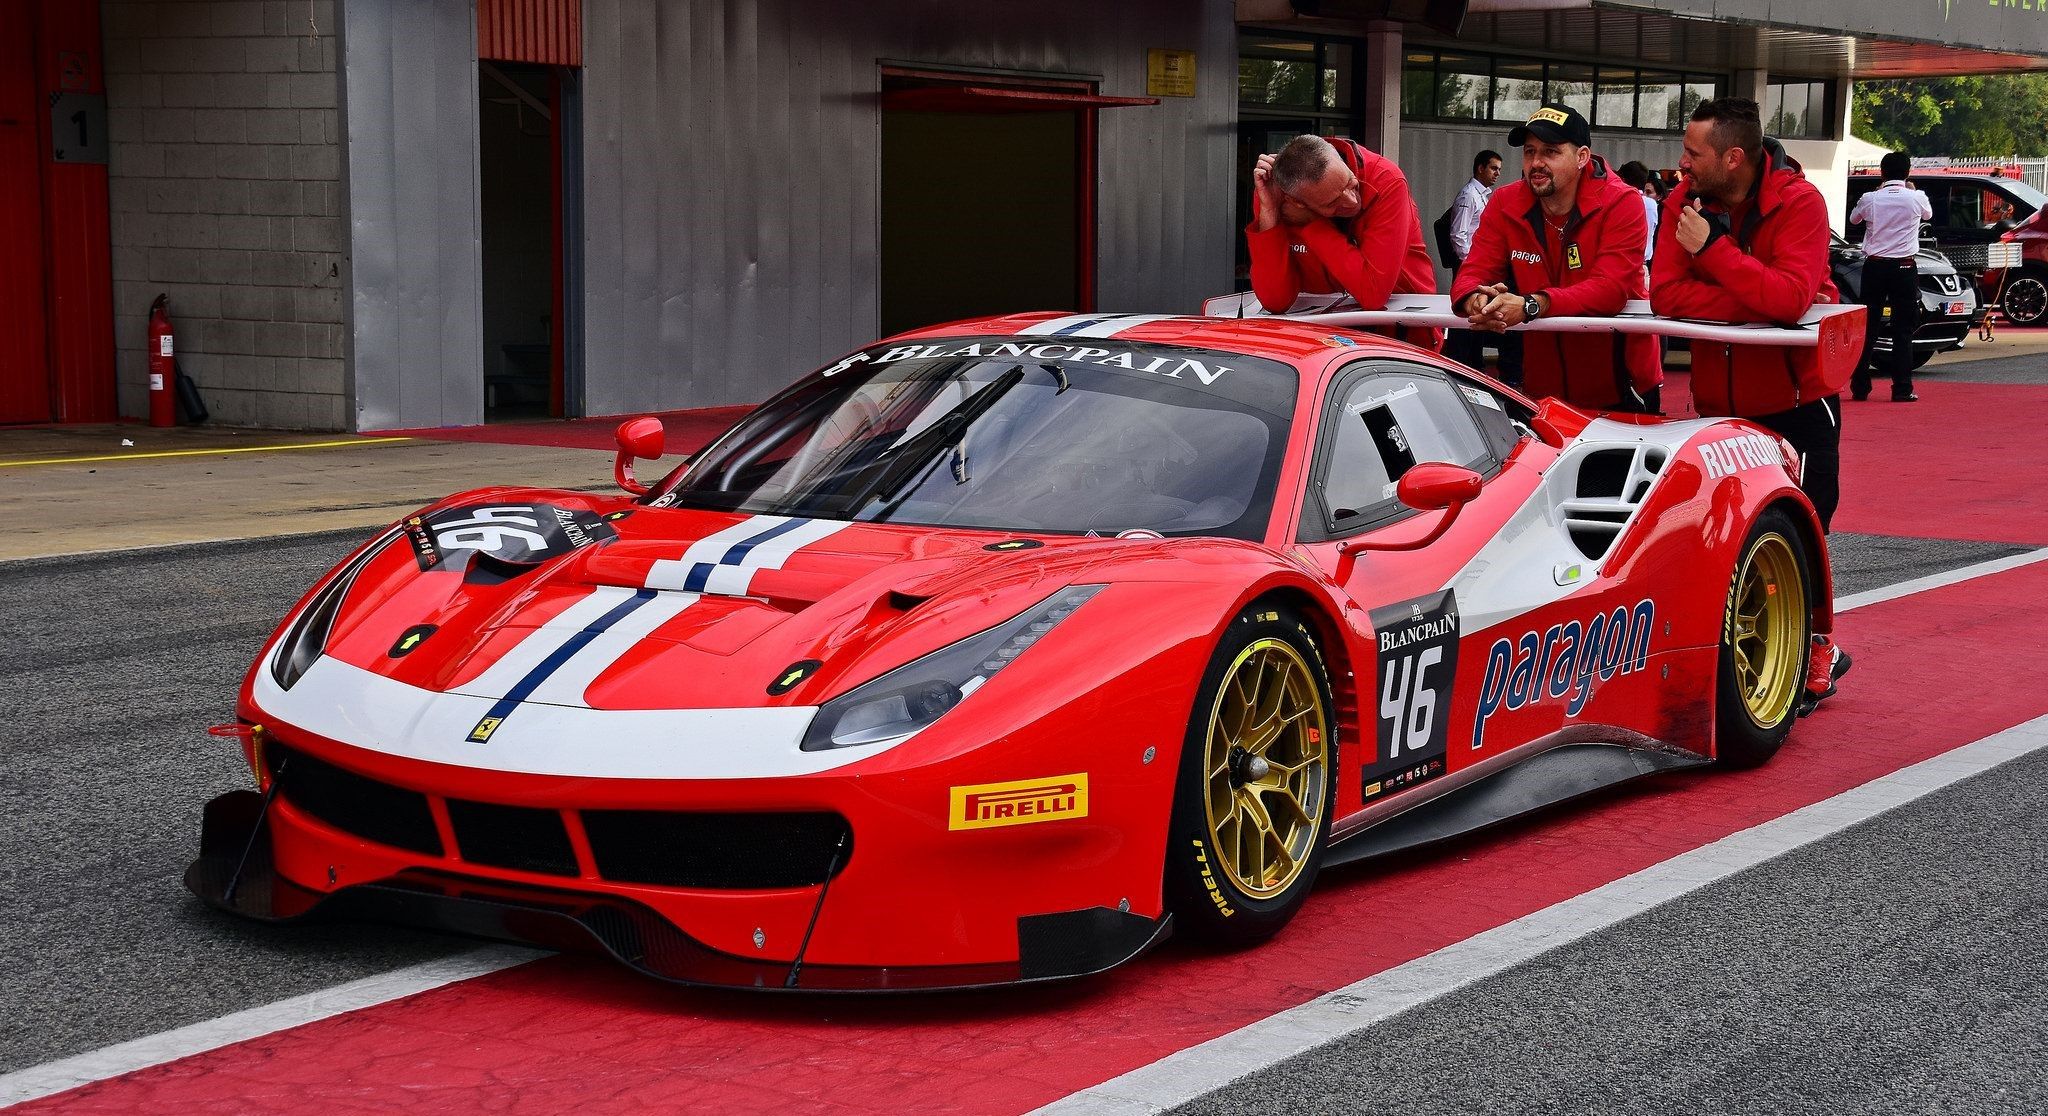 Pilotos de Ferrari apoyados en un coche de carreras